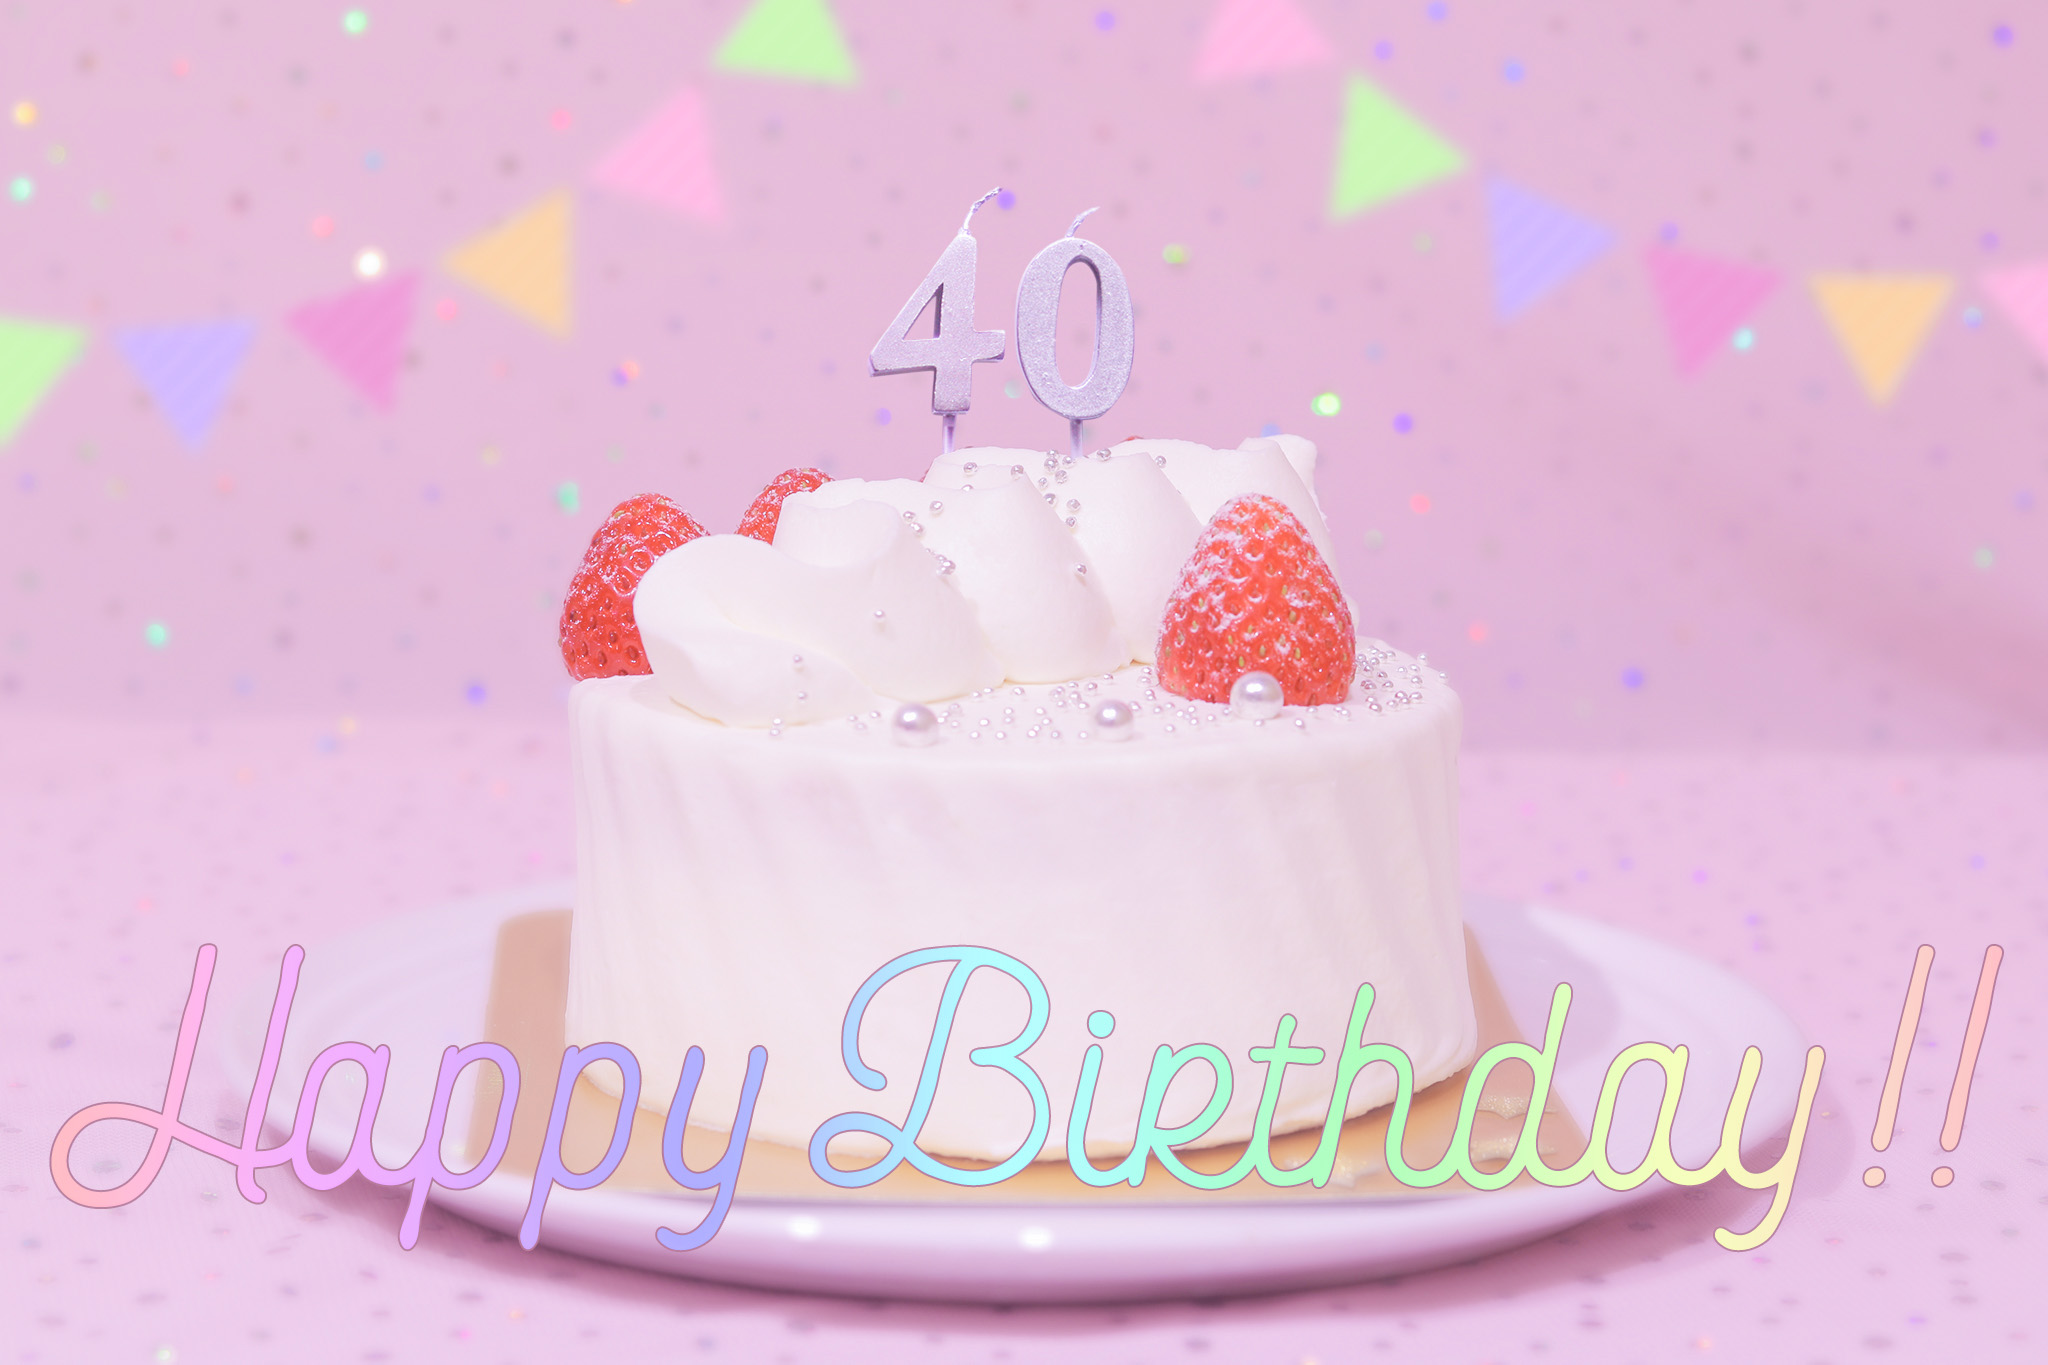 かわいい誕生日画像 ケーキとパステルカラーで可愛くお祝い 40歳編 のフリー画像 おしゃれなフリー写真素材 Girly Drop